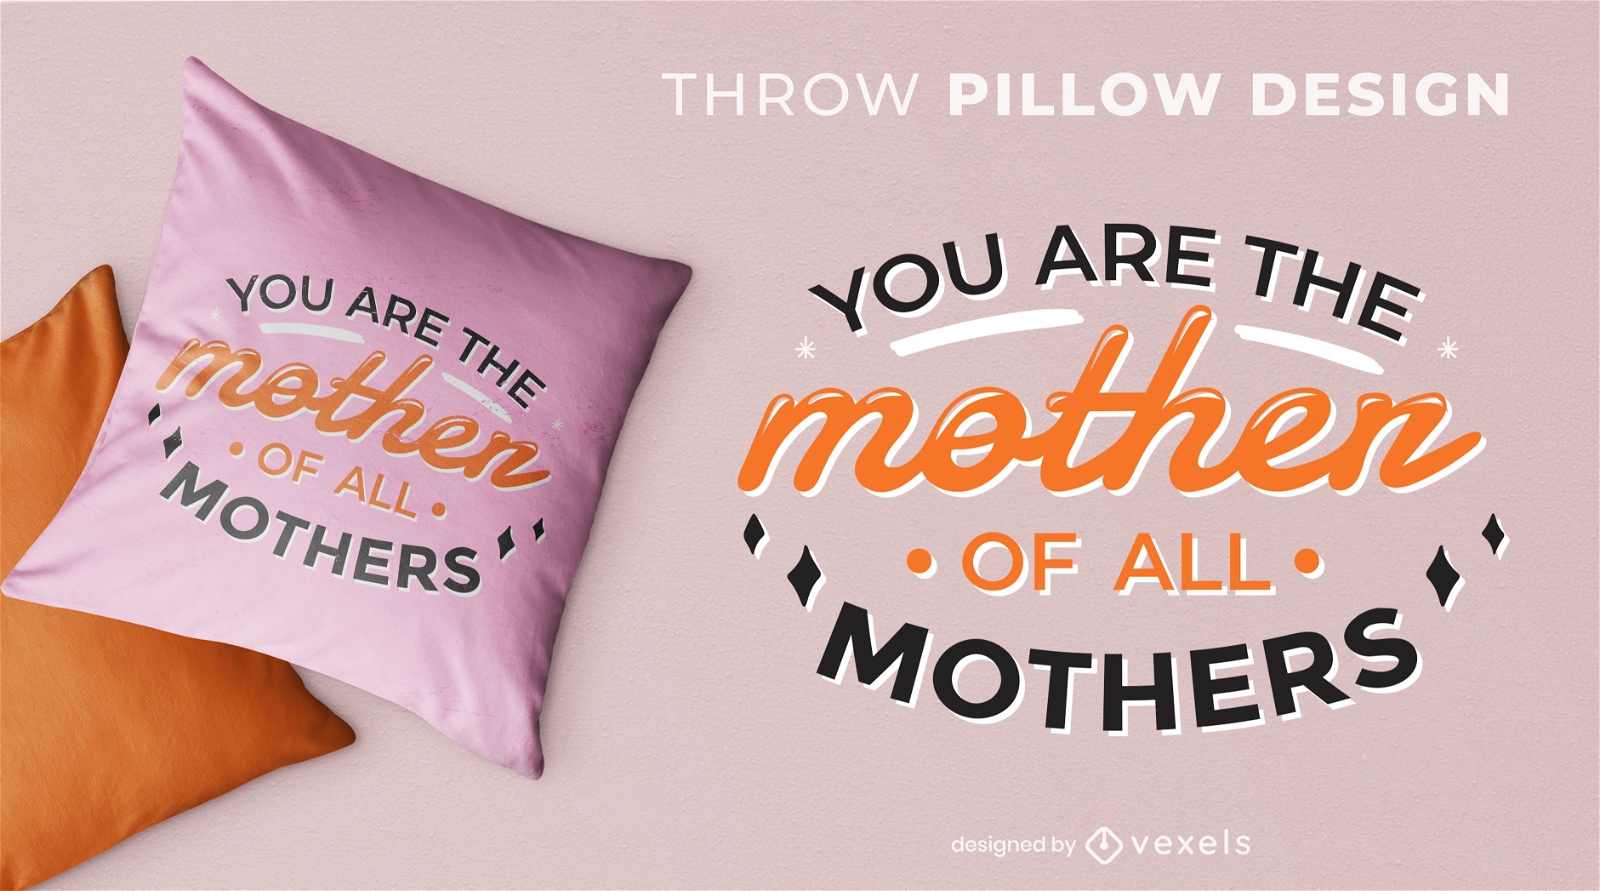 Dise?o de almohada de madre de todas las madres.